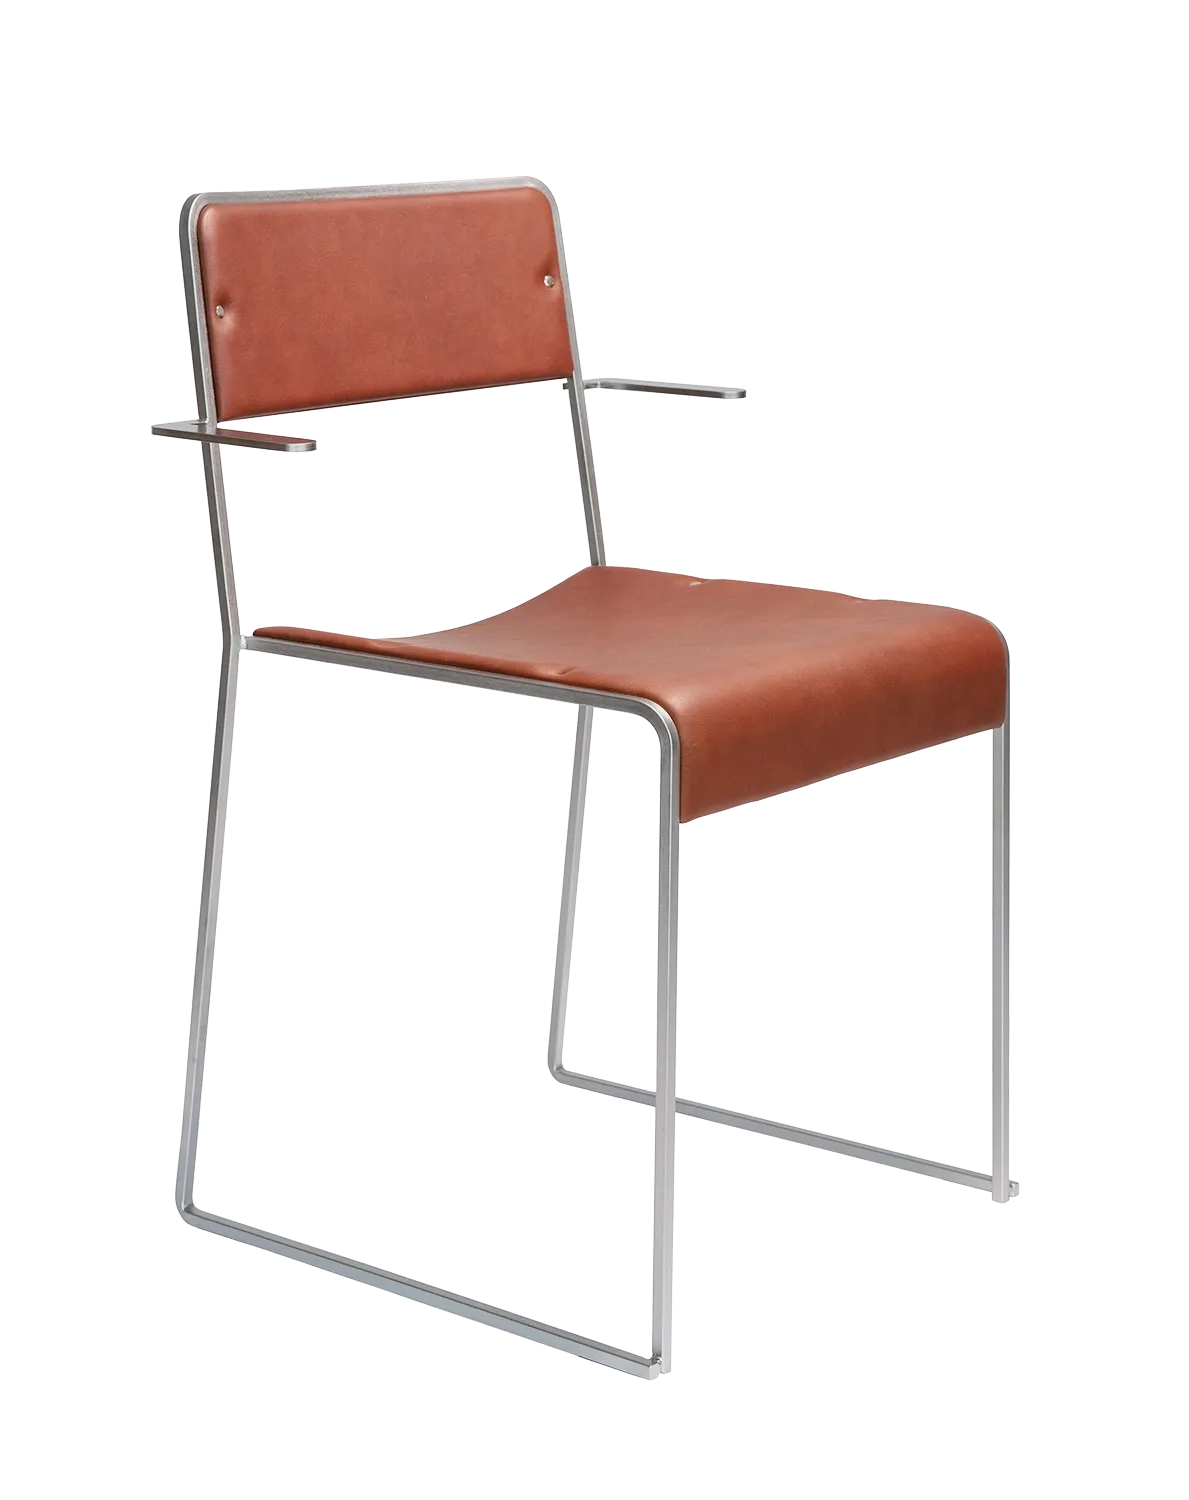 Bilder på stolen Sindre formgiven av Pierre Sindre och producerad av möbelföretaget Källemo.